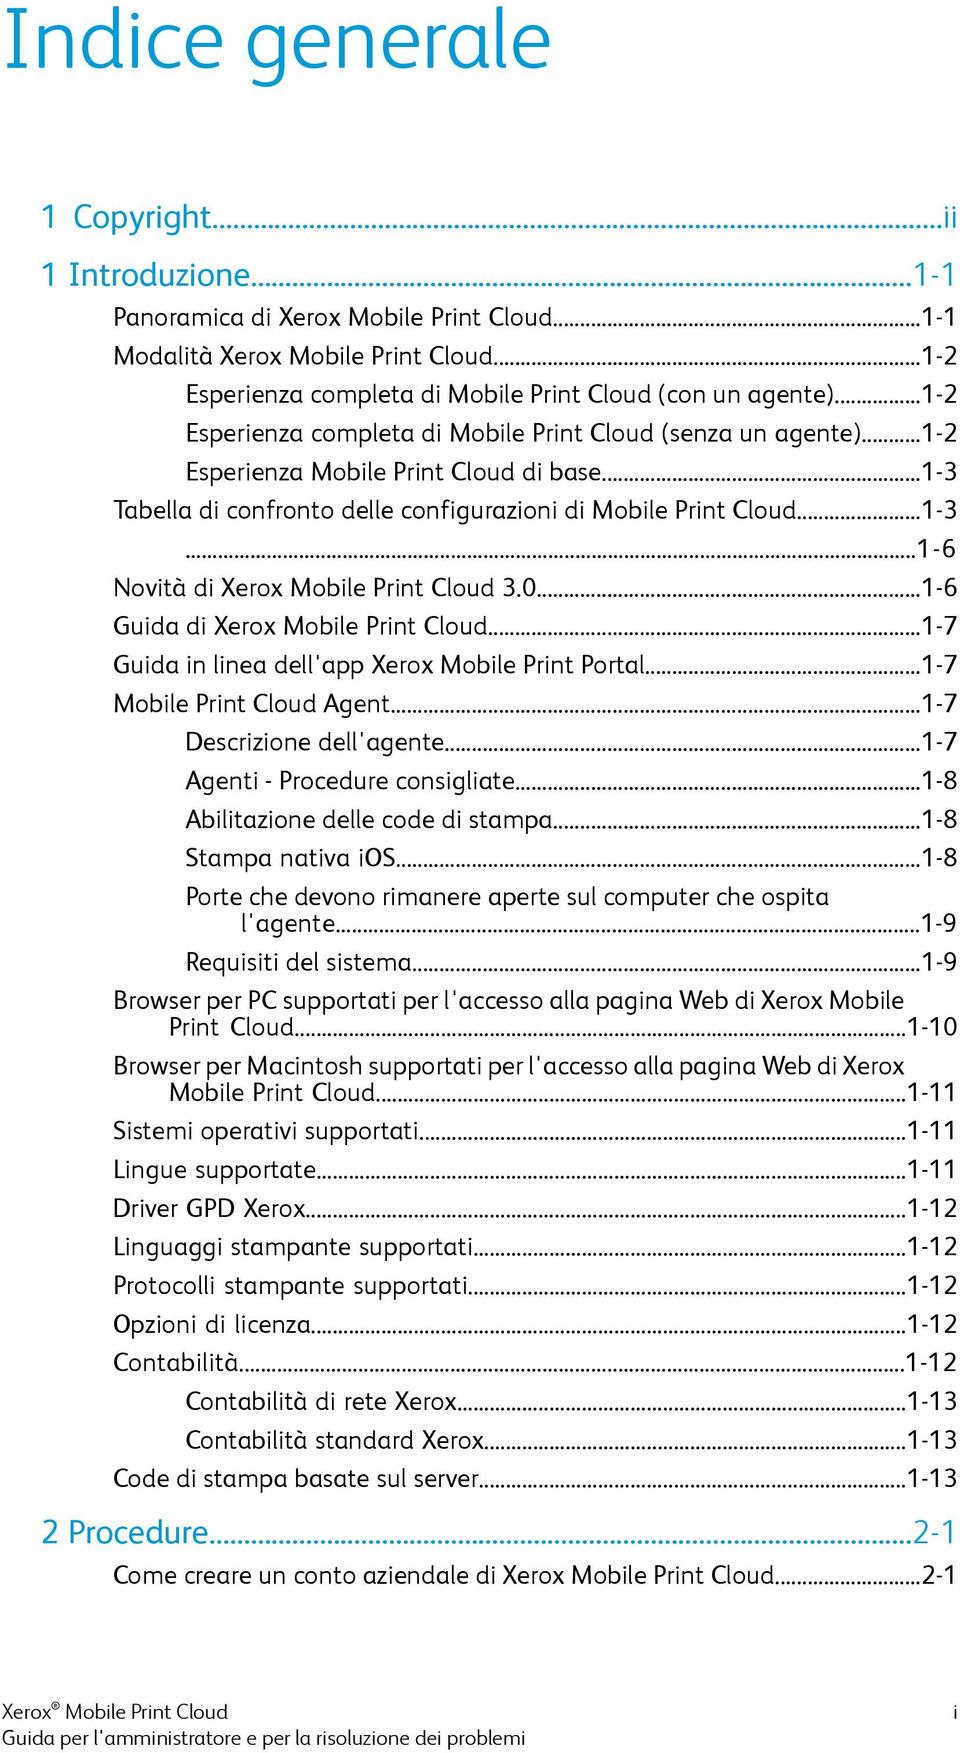 0...1-6 Guida di Xerox Mobile Print Cloud...1-7 Guida in linea dell'app Xerox Mobile Print Portal...1-7 Mobile Print Cloud Agent...1-7 Descrizione dell'agente...1-7 Agenti - Procedure consigliate.